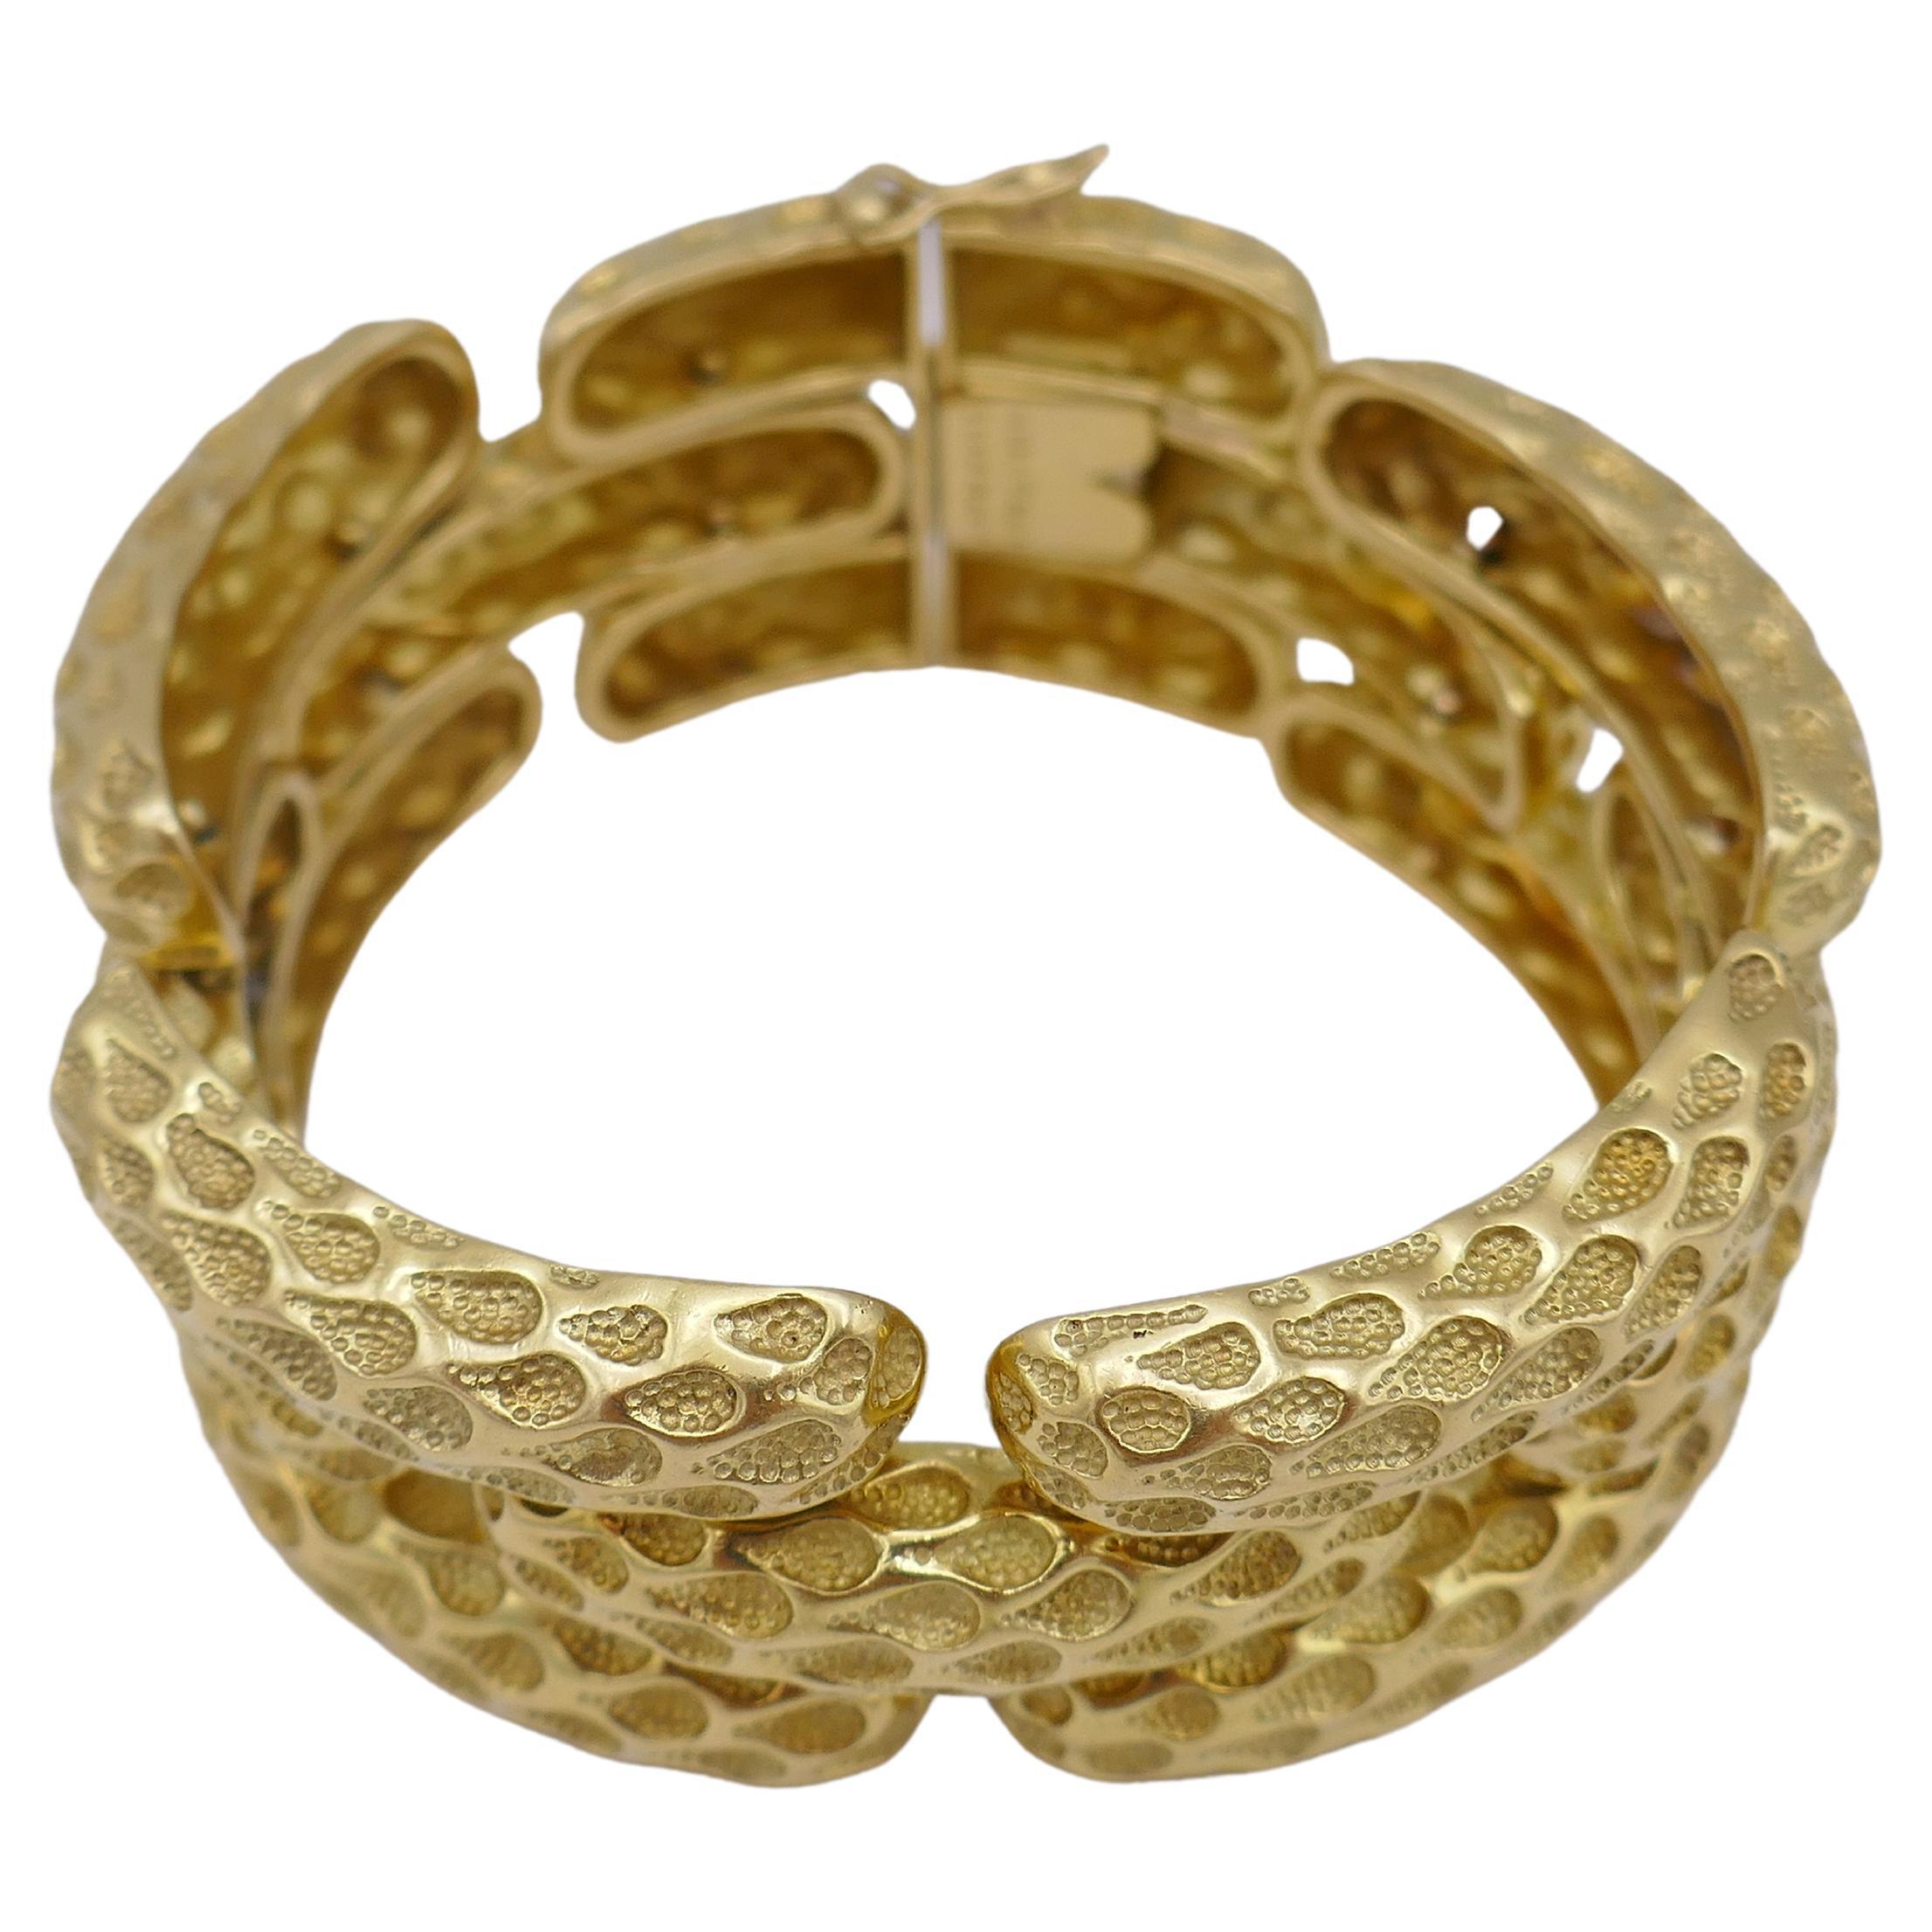 Ein erstaunliches Armband von Tiffany & Co. aus 18k Gold. Mit einem perfekt gearbeiteten, gehämmerten Schlangenhautmotiv.
Das Armband besteht aus ovalen Goldteilen, die sphärisch in Form eines Handgelenks gebogen sind. Es gibt drei Reihen dieser